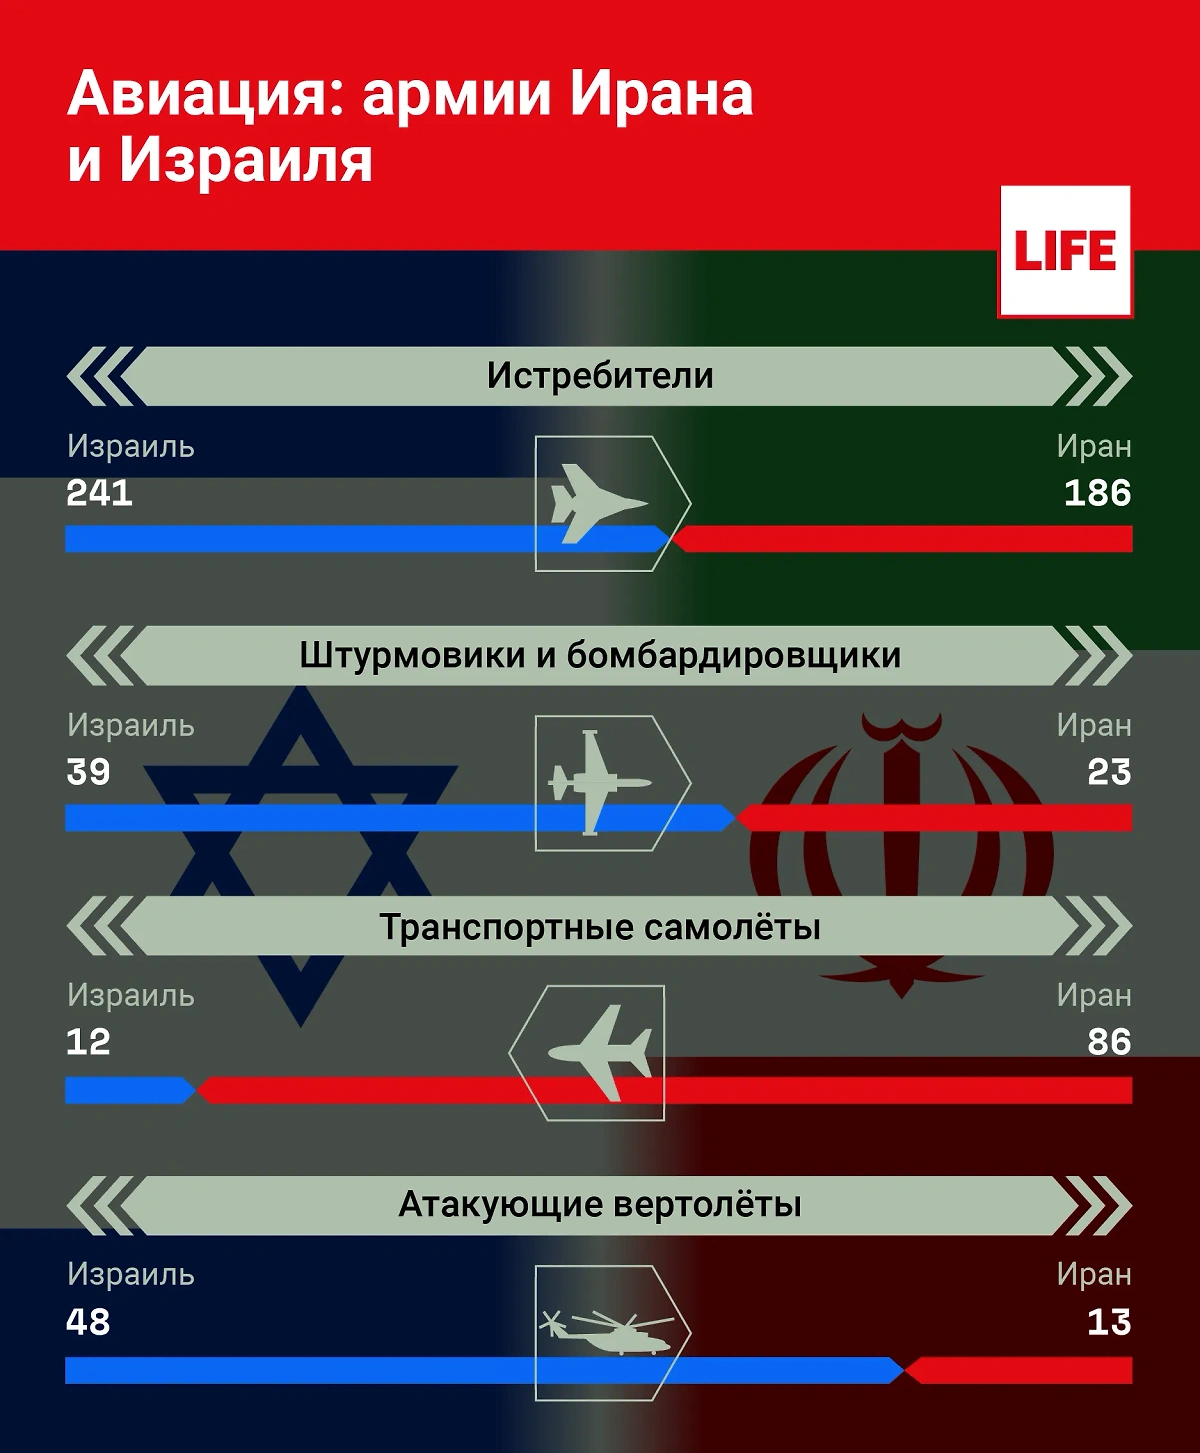 Сравнение ВВС армий Израиля и Ирана. Инфографика © Life.ru